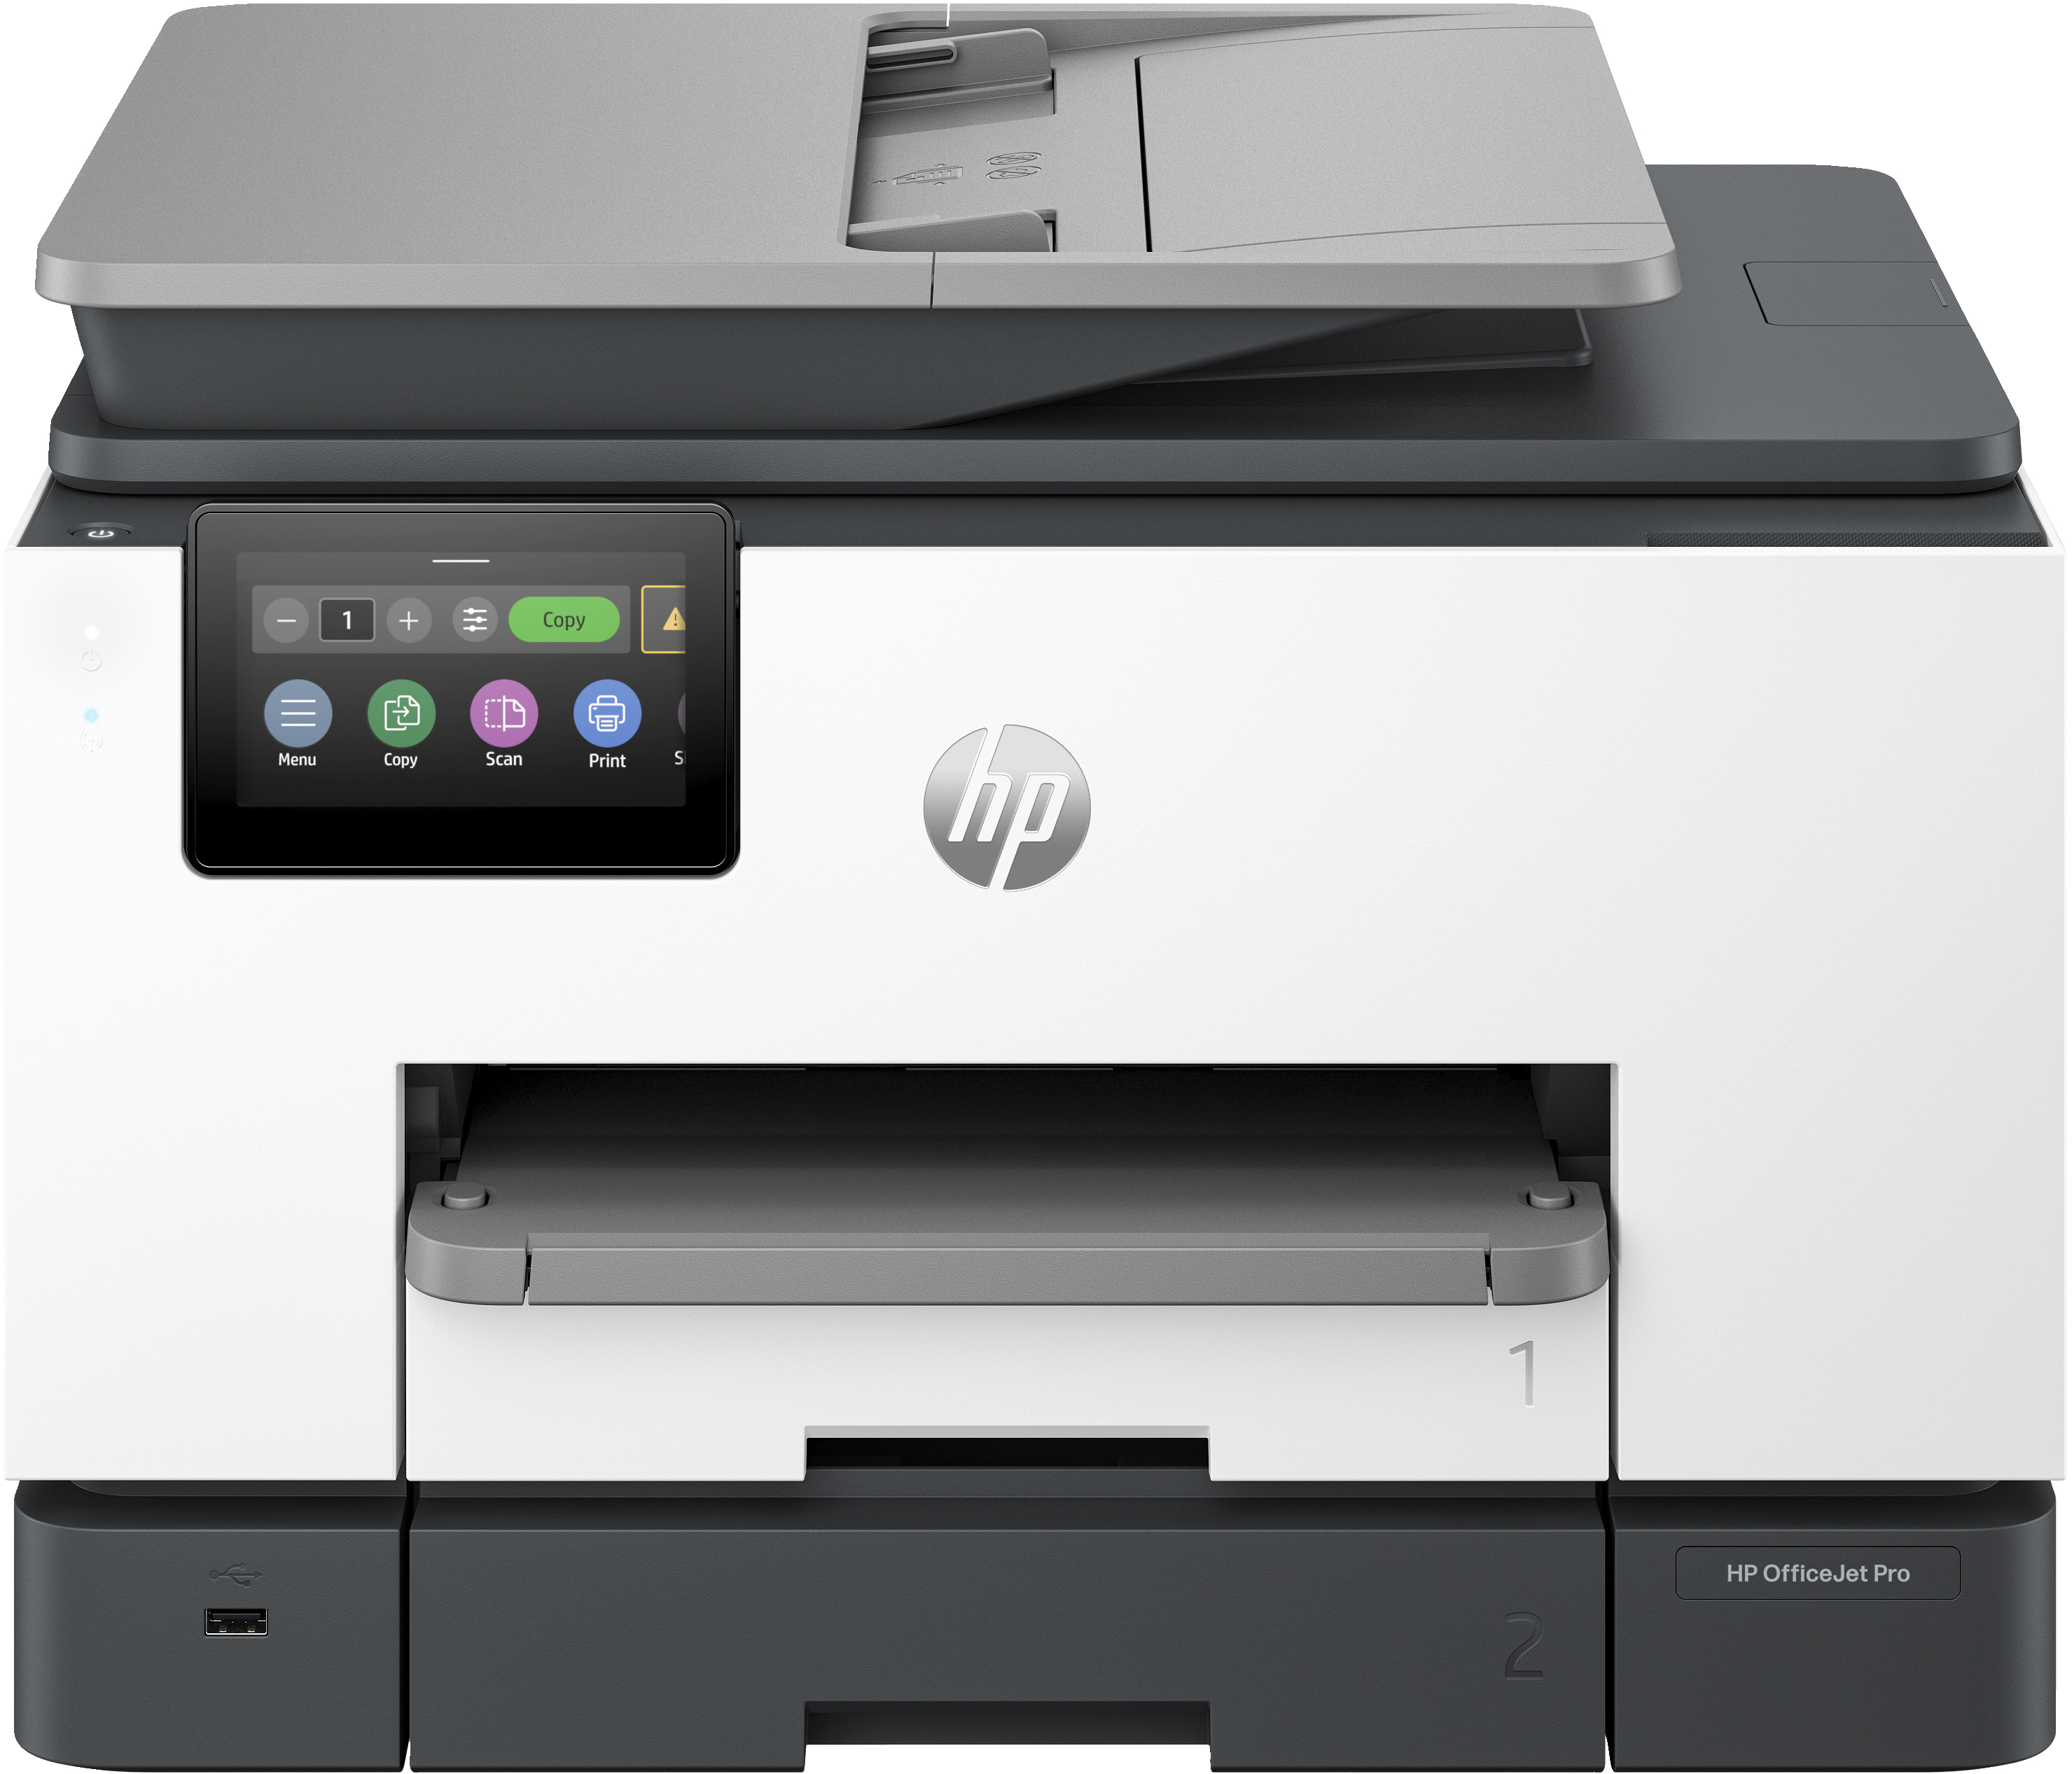 Image of HP OfficeJet Pro Stampante multifunzione HP 9132e, Colore, Stampante per Piccole e medie imprese, Stampa, copia, scansione, fax, wireless HP+ idonea a HP Instant Ink Stampa fronte/retro scansione fronte/retro alimentatore automatico di documenti fax touch